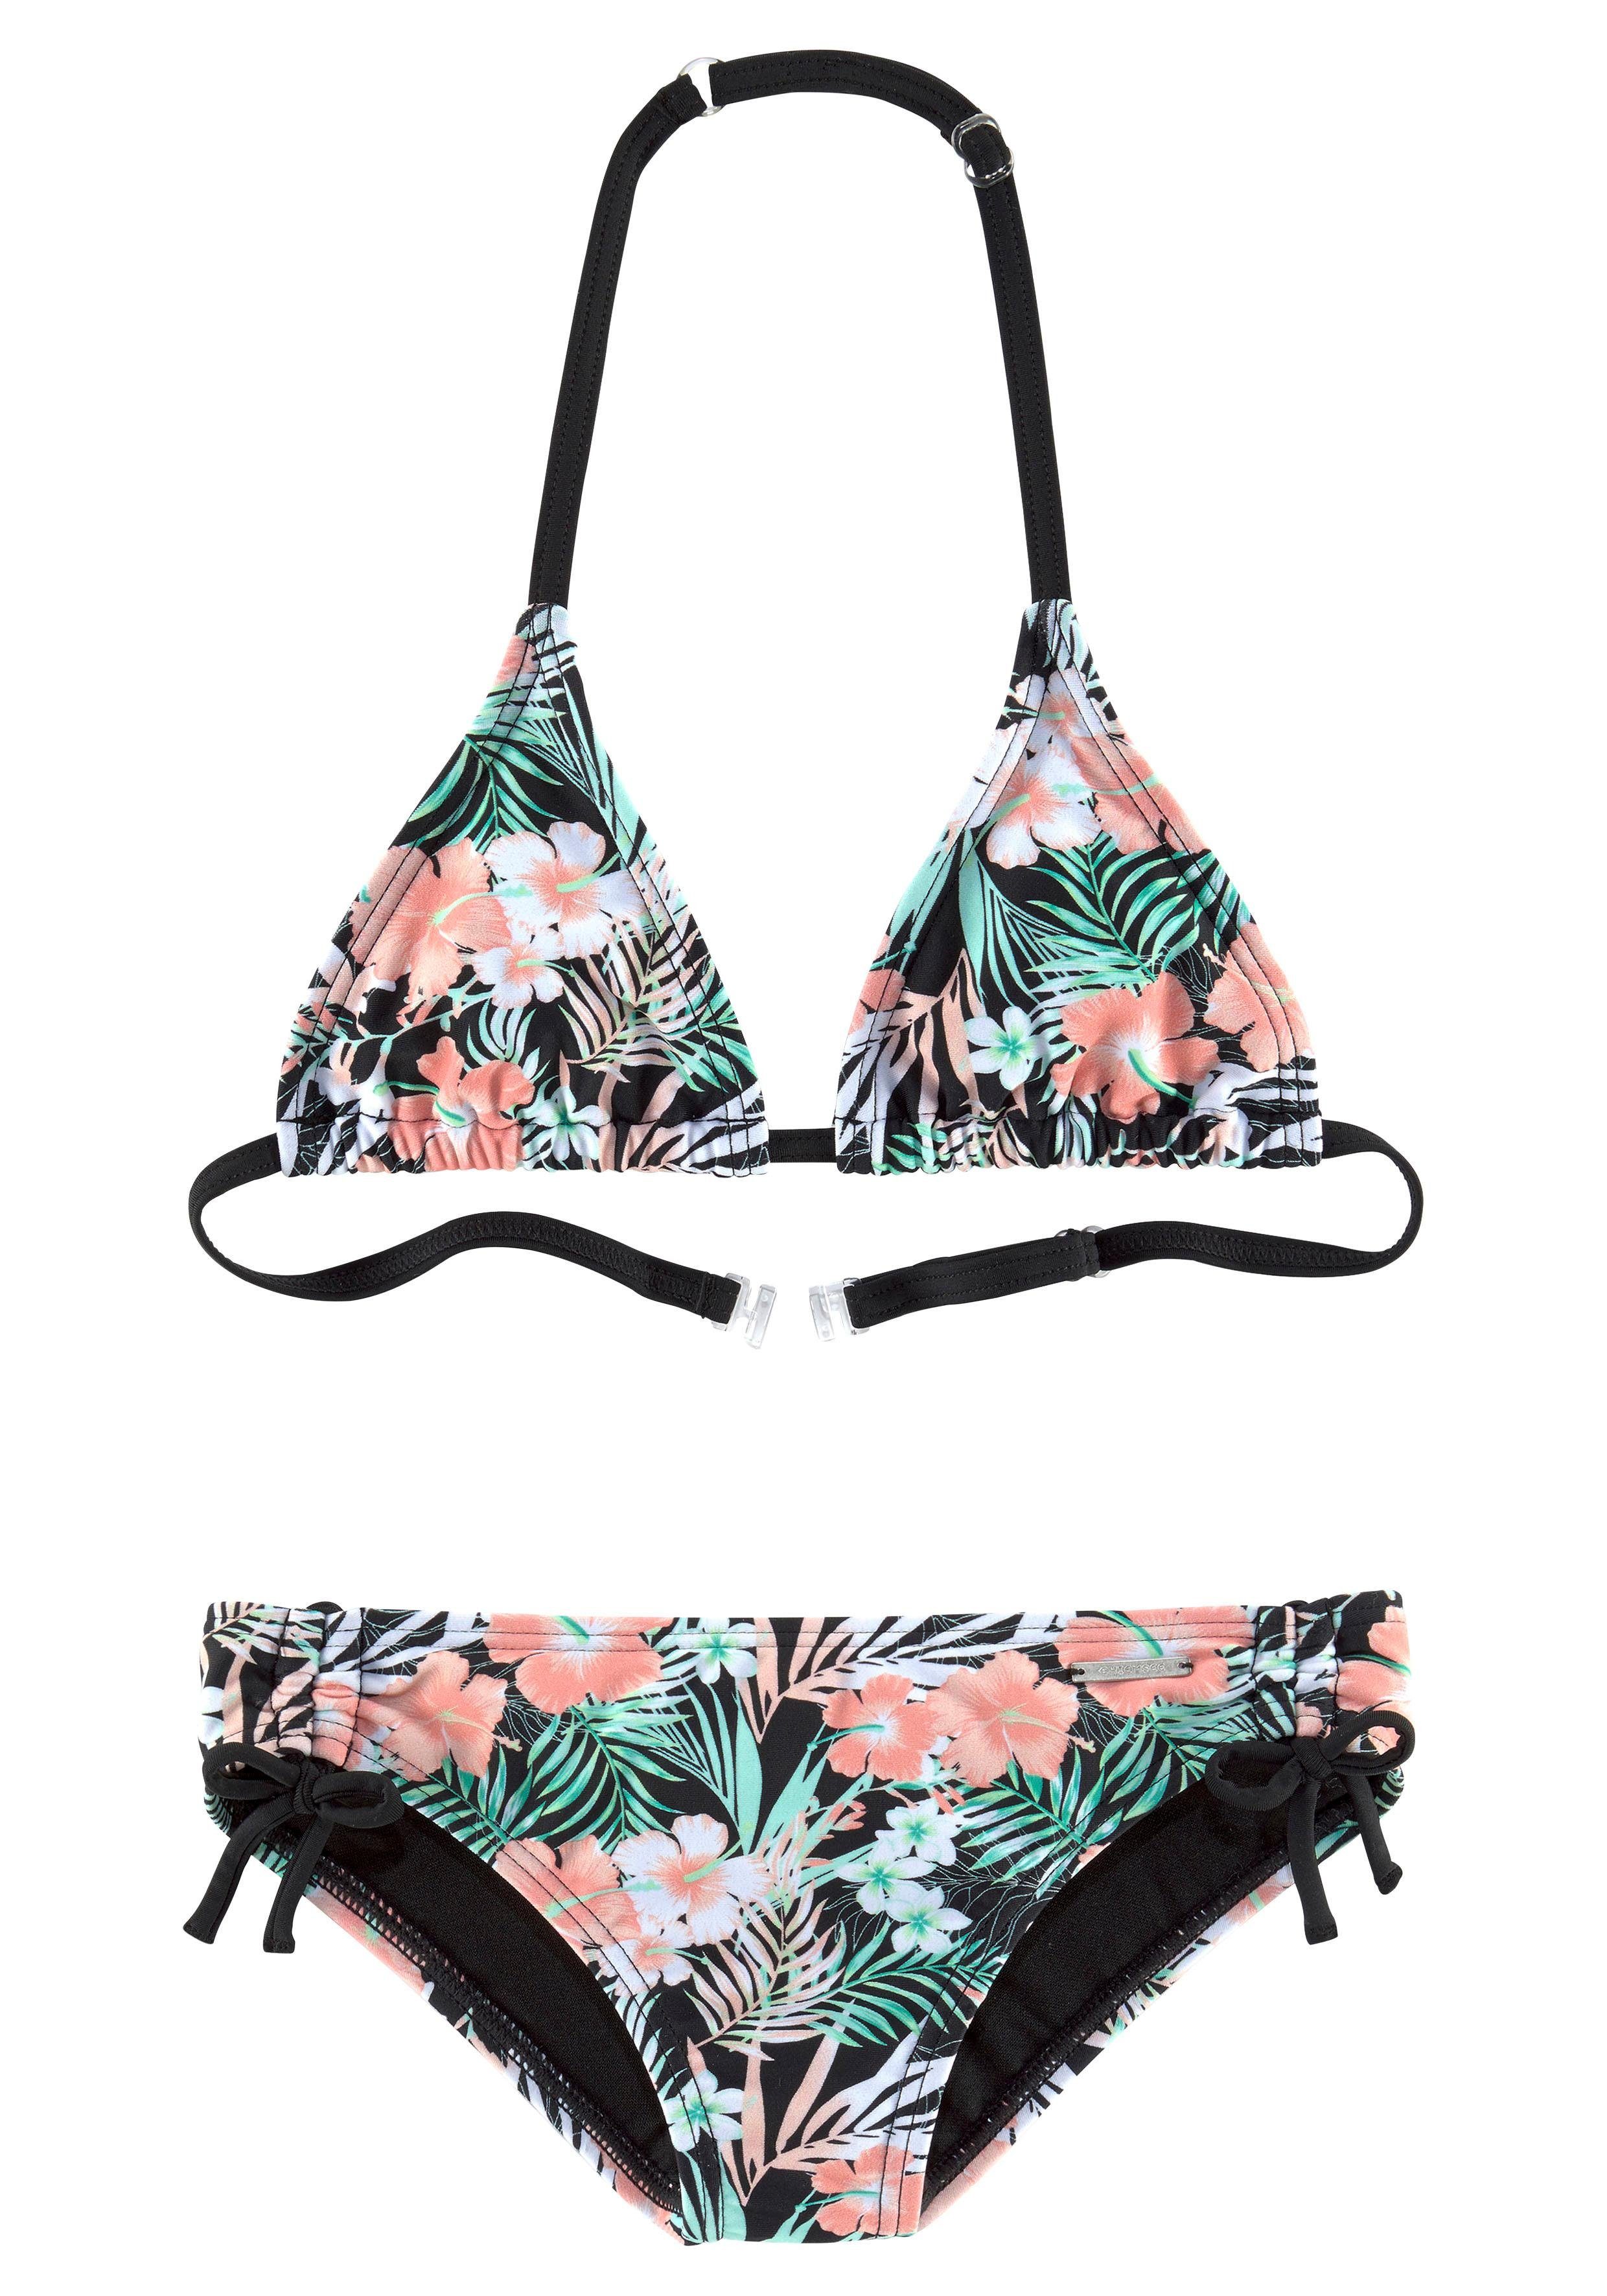 Chiemsee Triangel-Bikini mit floralem Design | OTTO